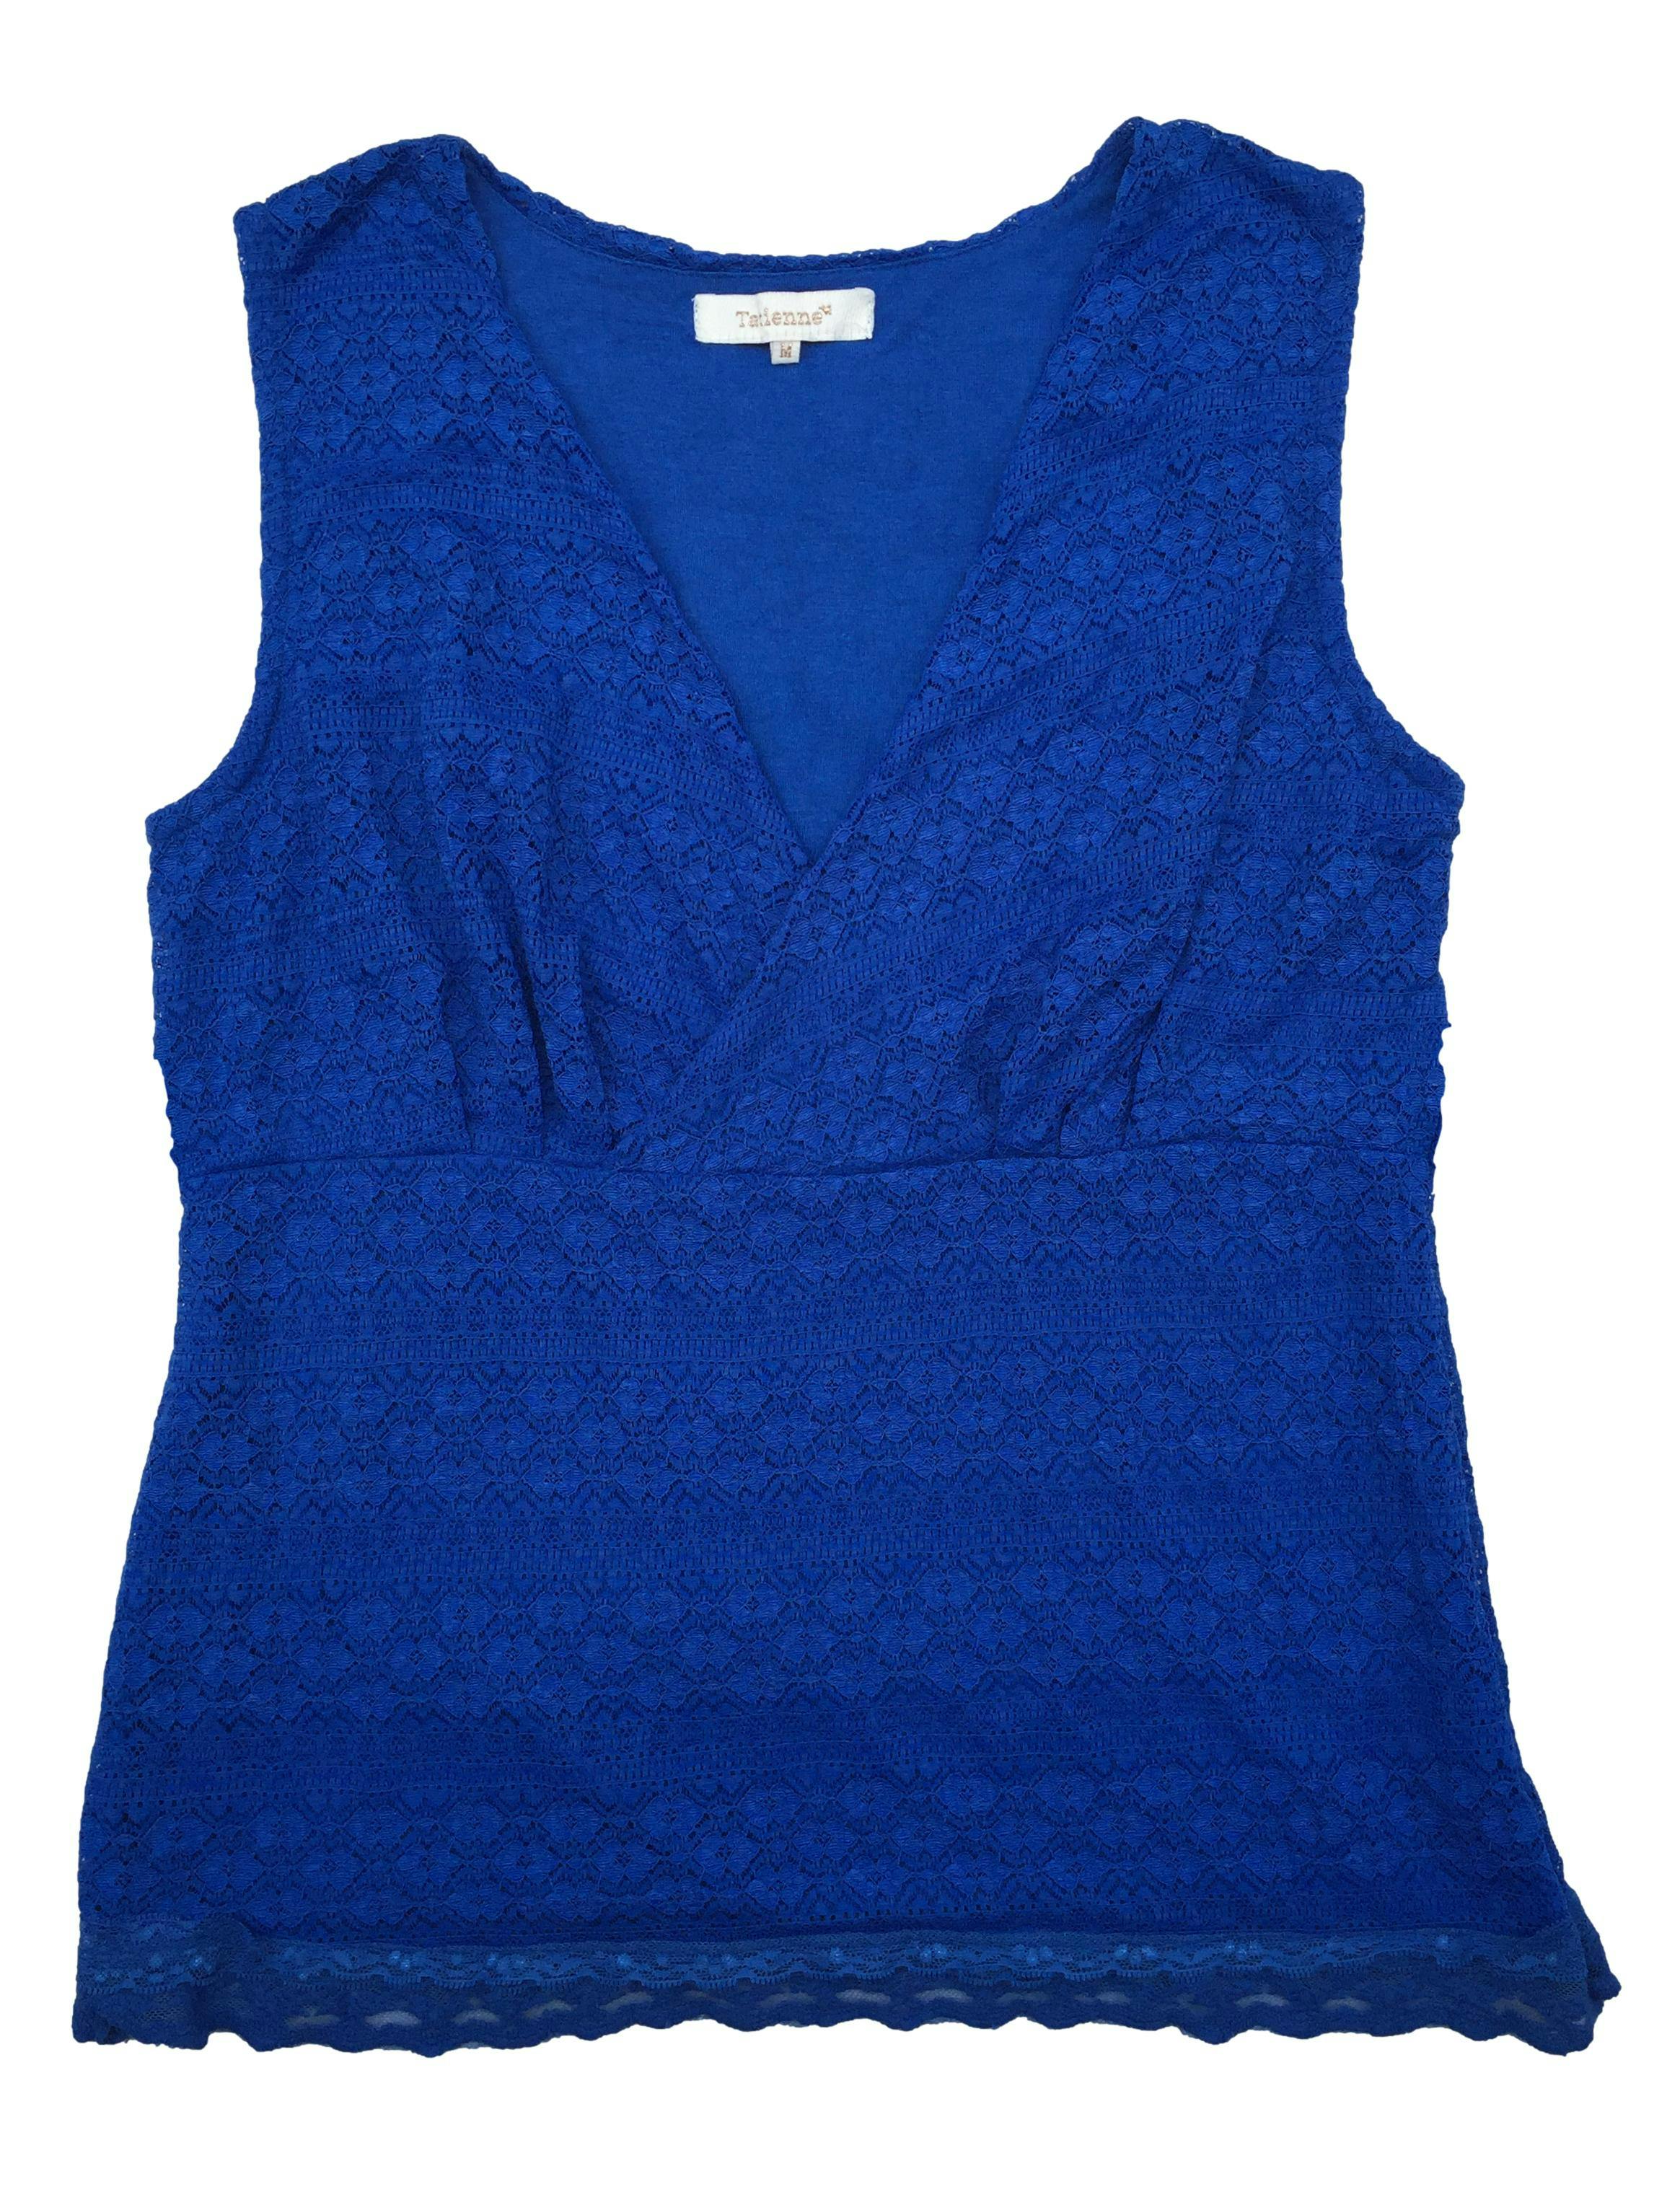 Blusa Tatienne de encaje azul con forro, escote cruzado y cintos. Busto 100cm, Largo 63cm.